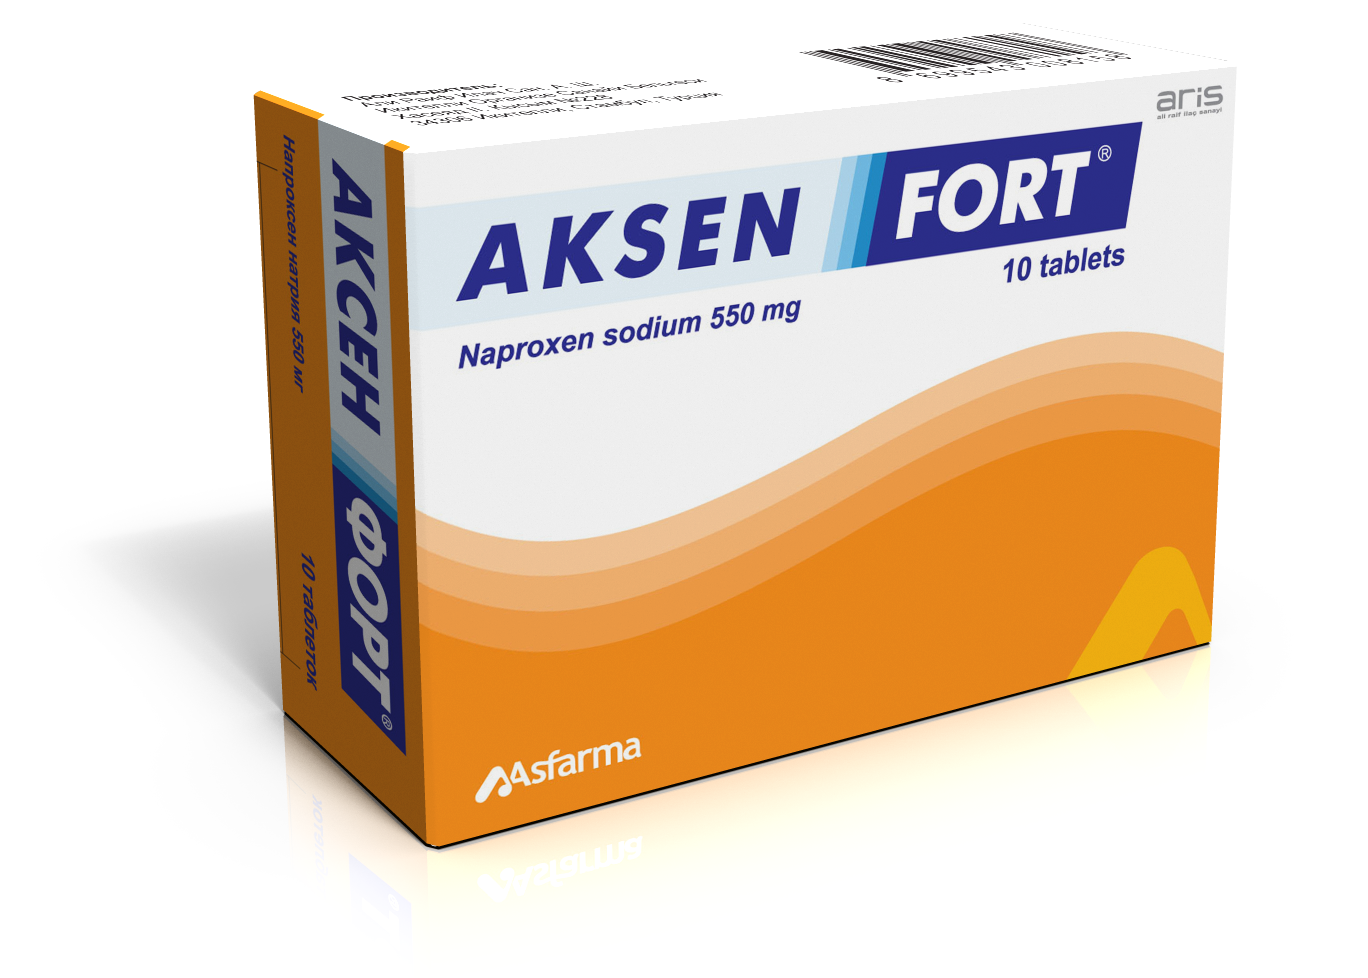 Aksen Fort - image 1